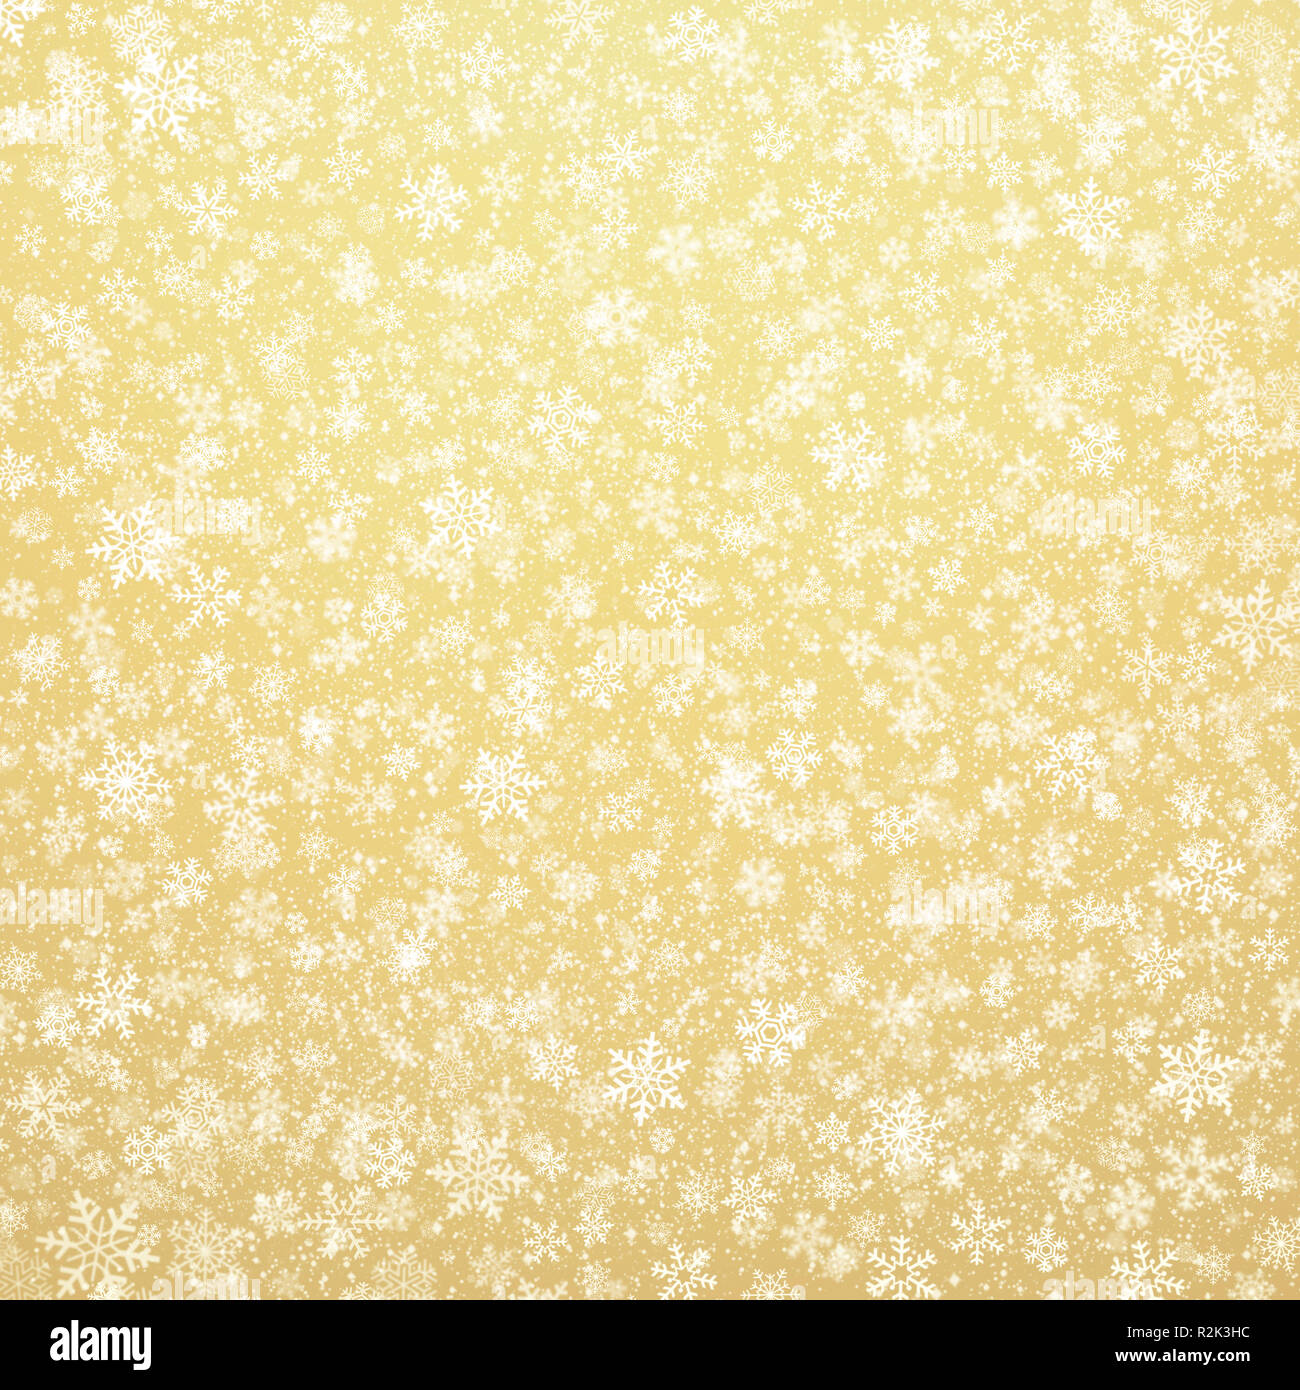 Weiße Schneeflocken Formen und fallenden Schnee auf einen goldenen Hintergrund. Weihnachten saisonale Material. Stockfoto